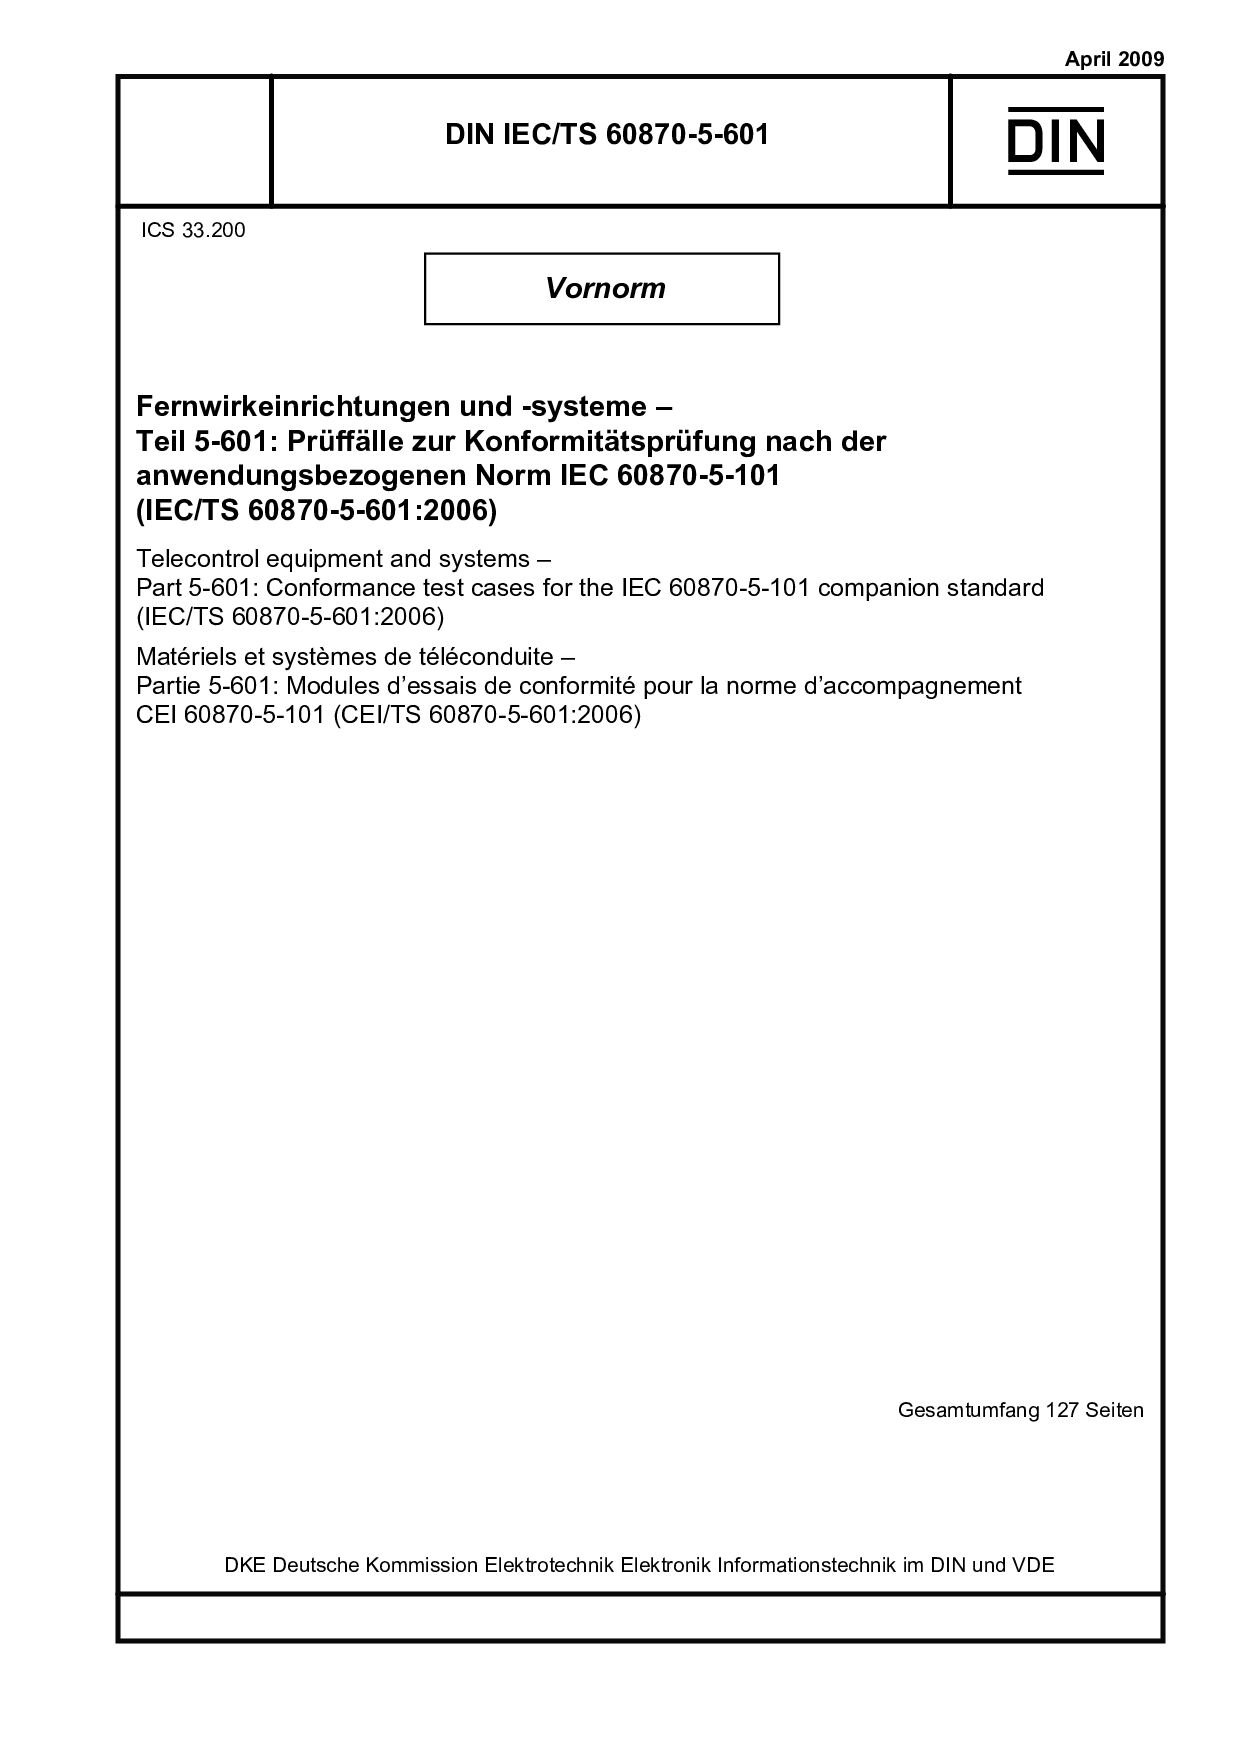 DIN IEC/TS 60870-5-601:2009封面图